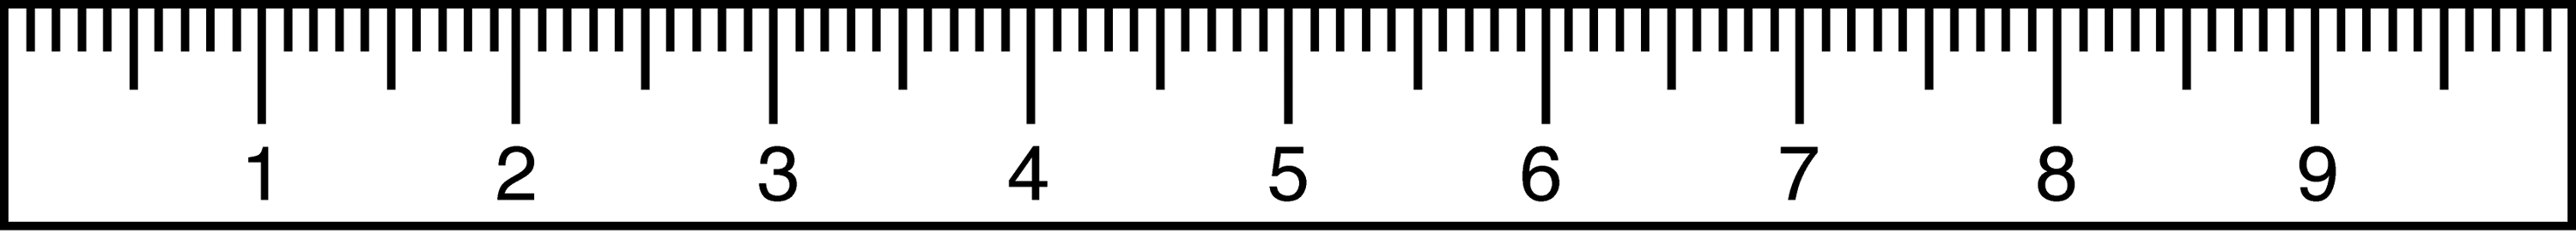 Metric Ruler   Clipart Etc